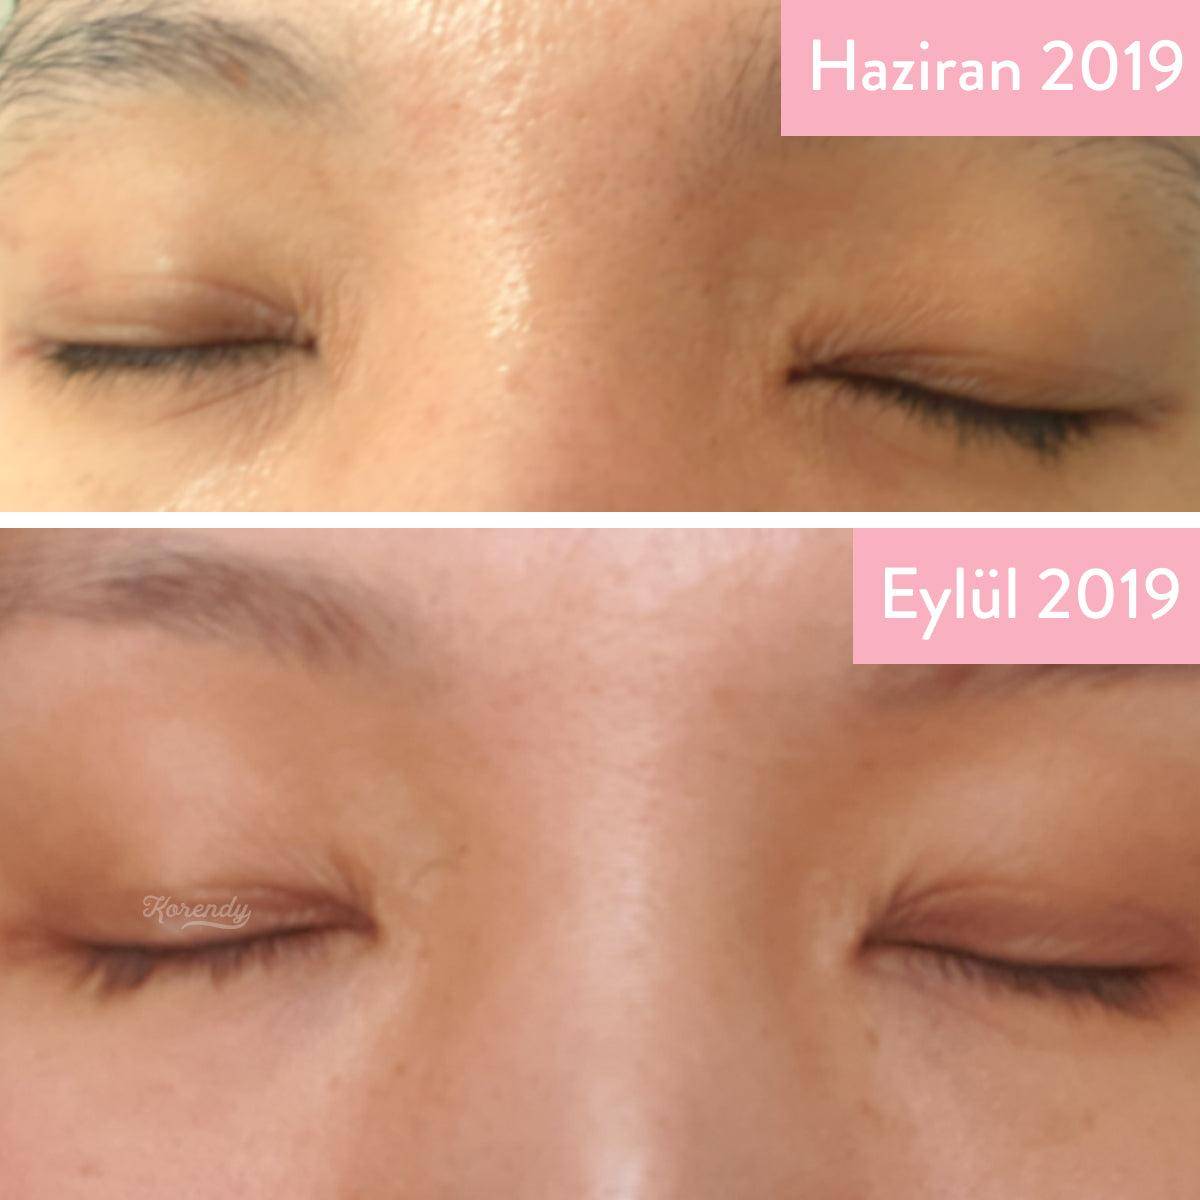 Manyo - Bifidalacto Ampoule Eye Cream 30ml Krem (Göz) Korendy Türkiye Turkey Kore Kozmetik Kbeauty Cilt Bakım 